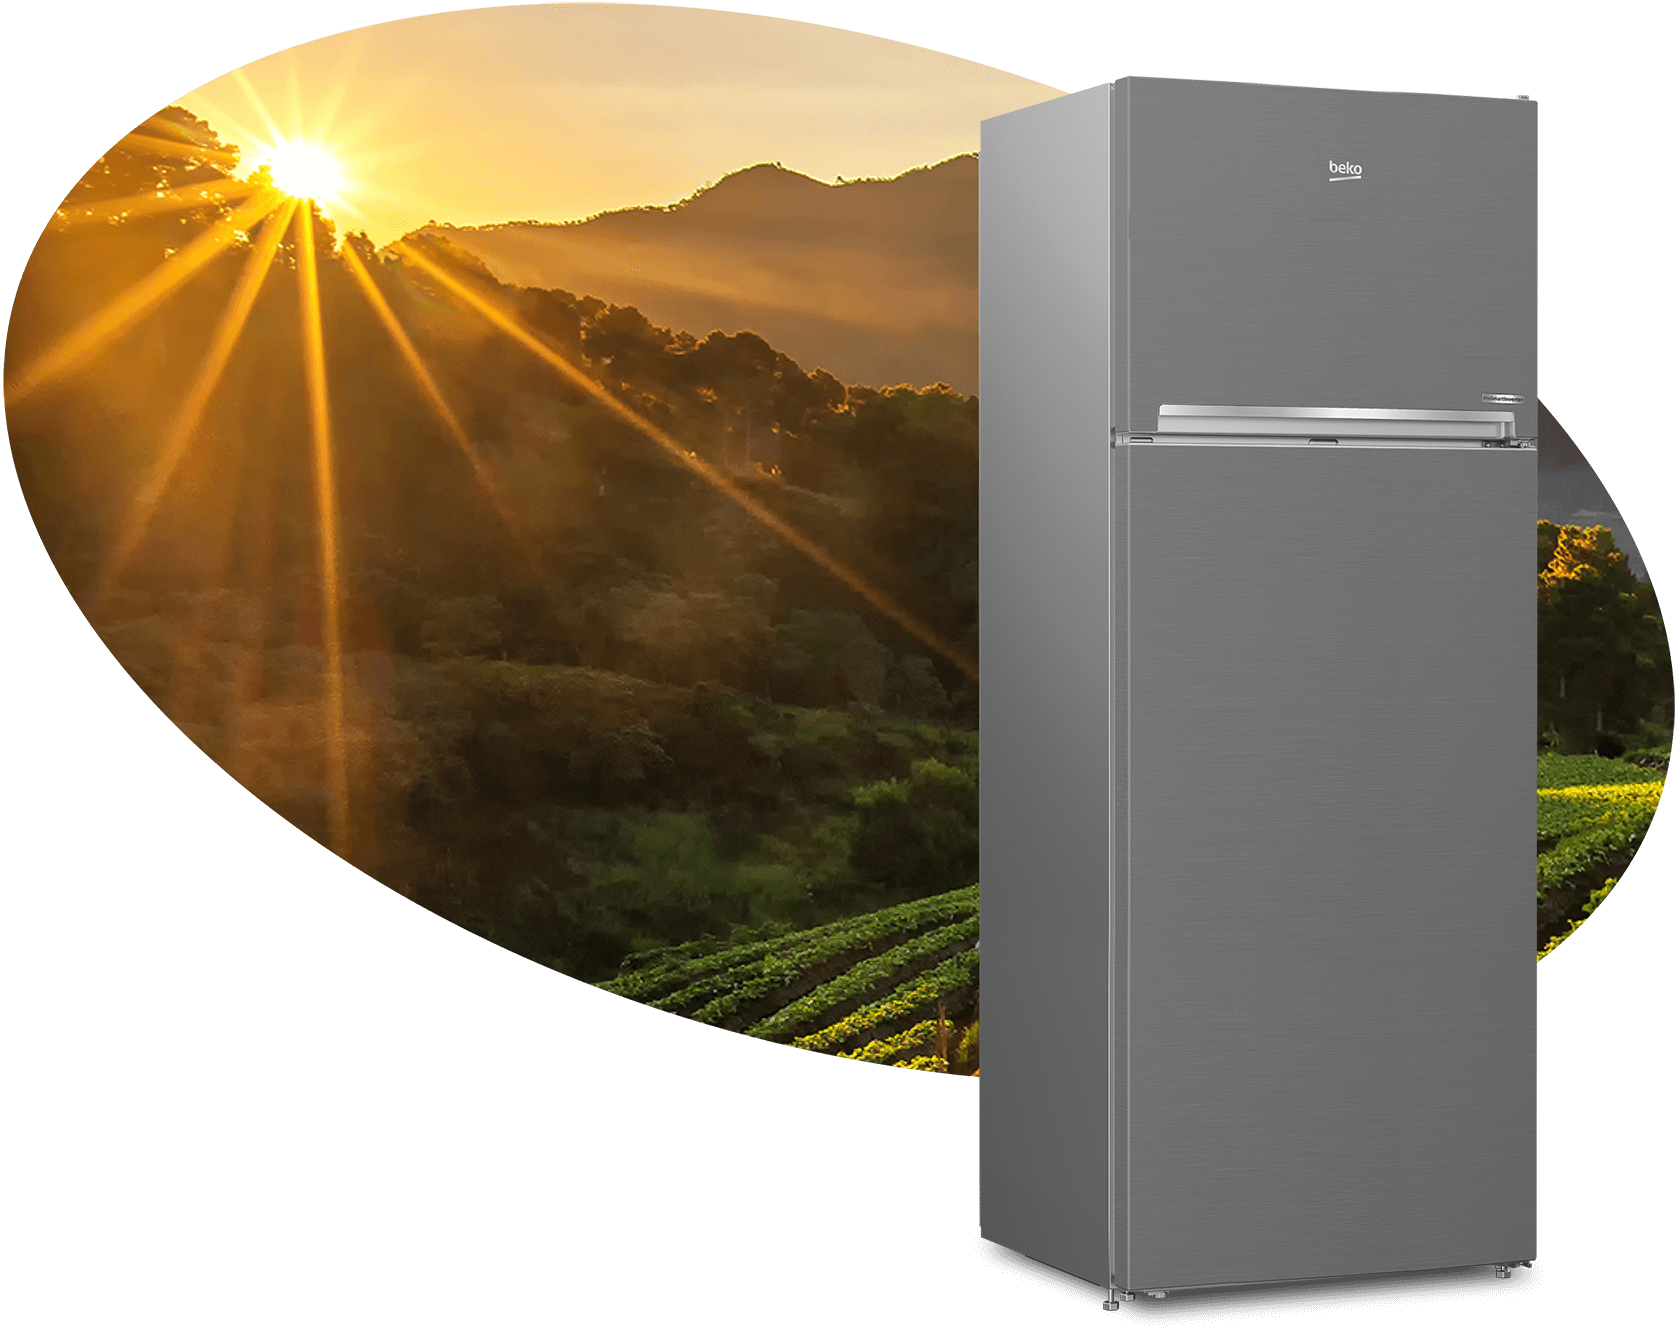 Réfrigérateur-congélateur (Double portes, 83.2 cm)